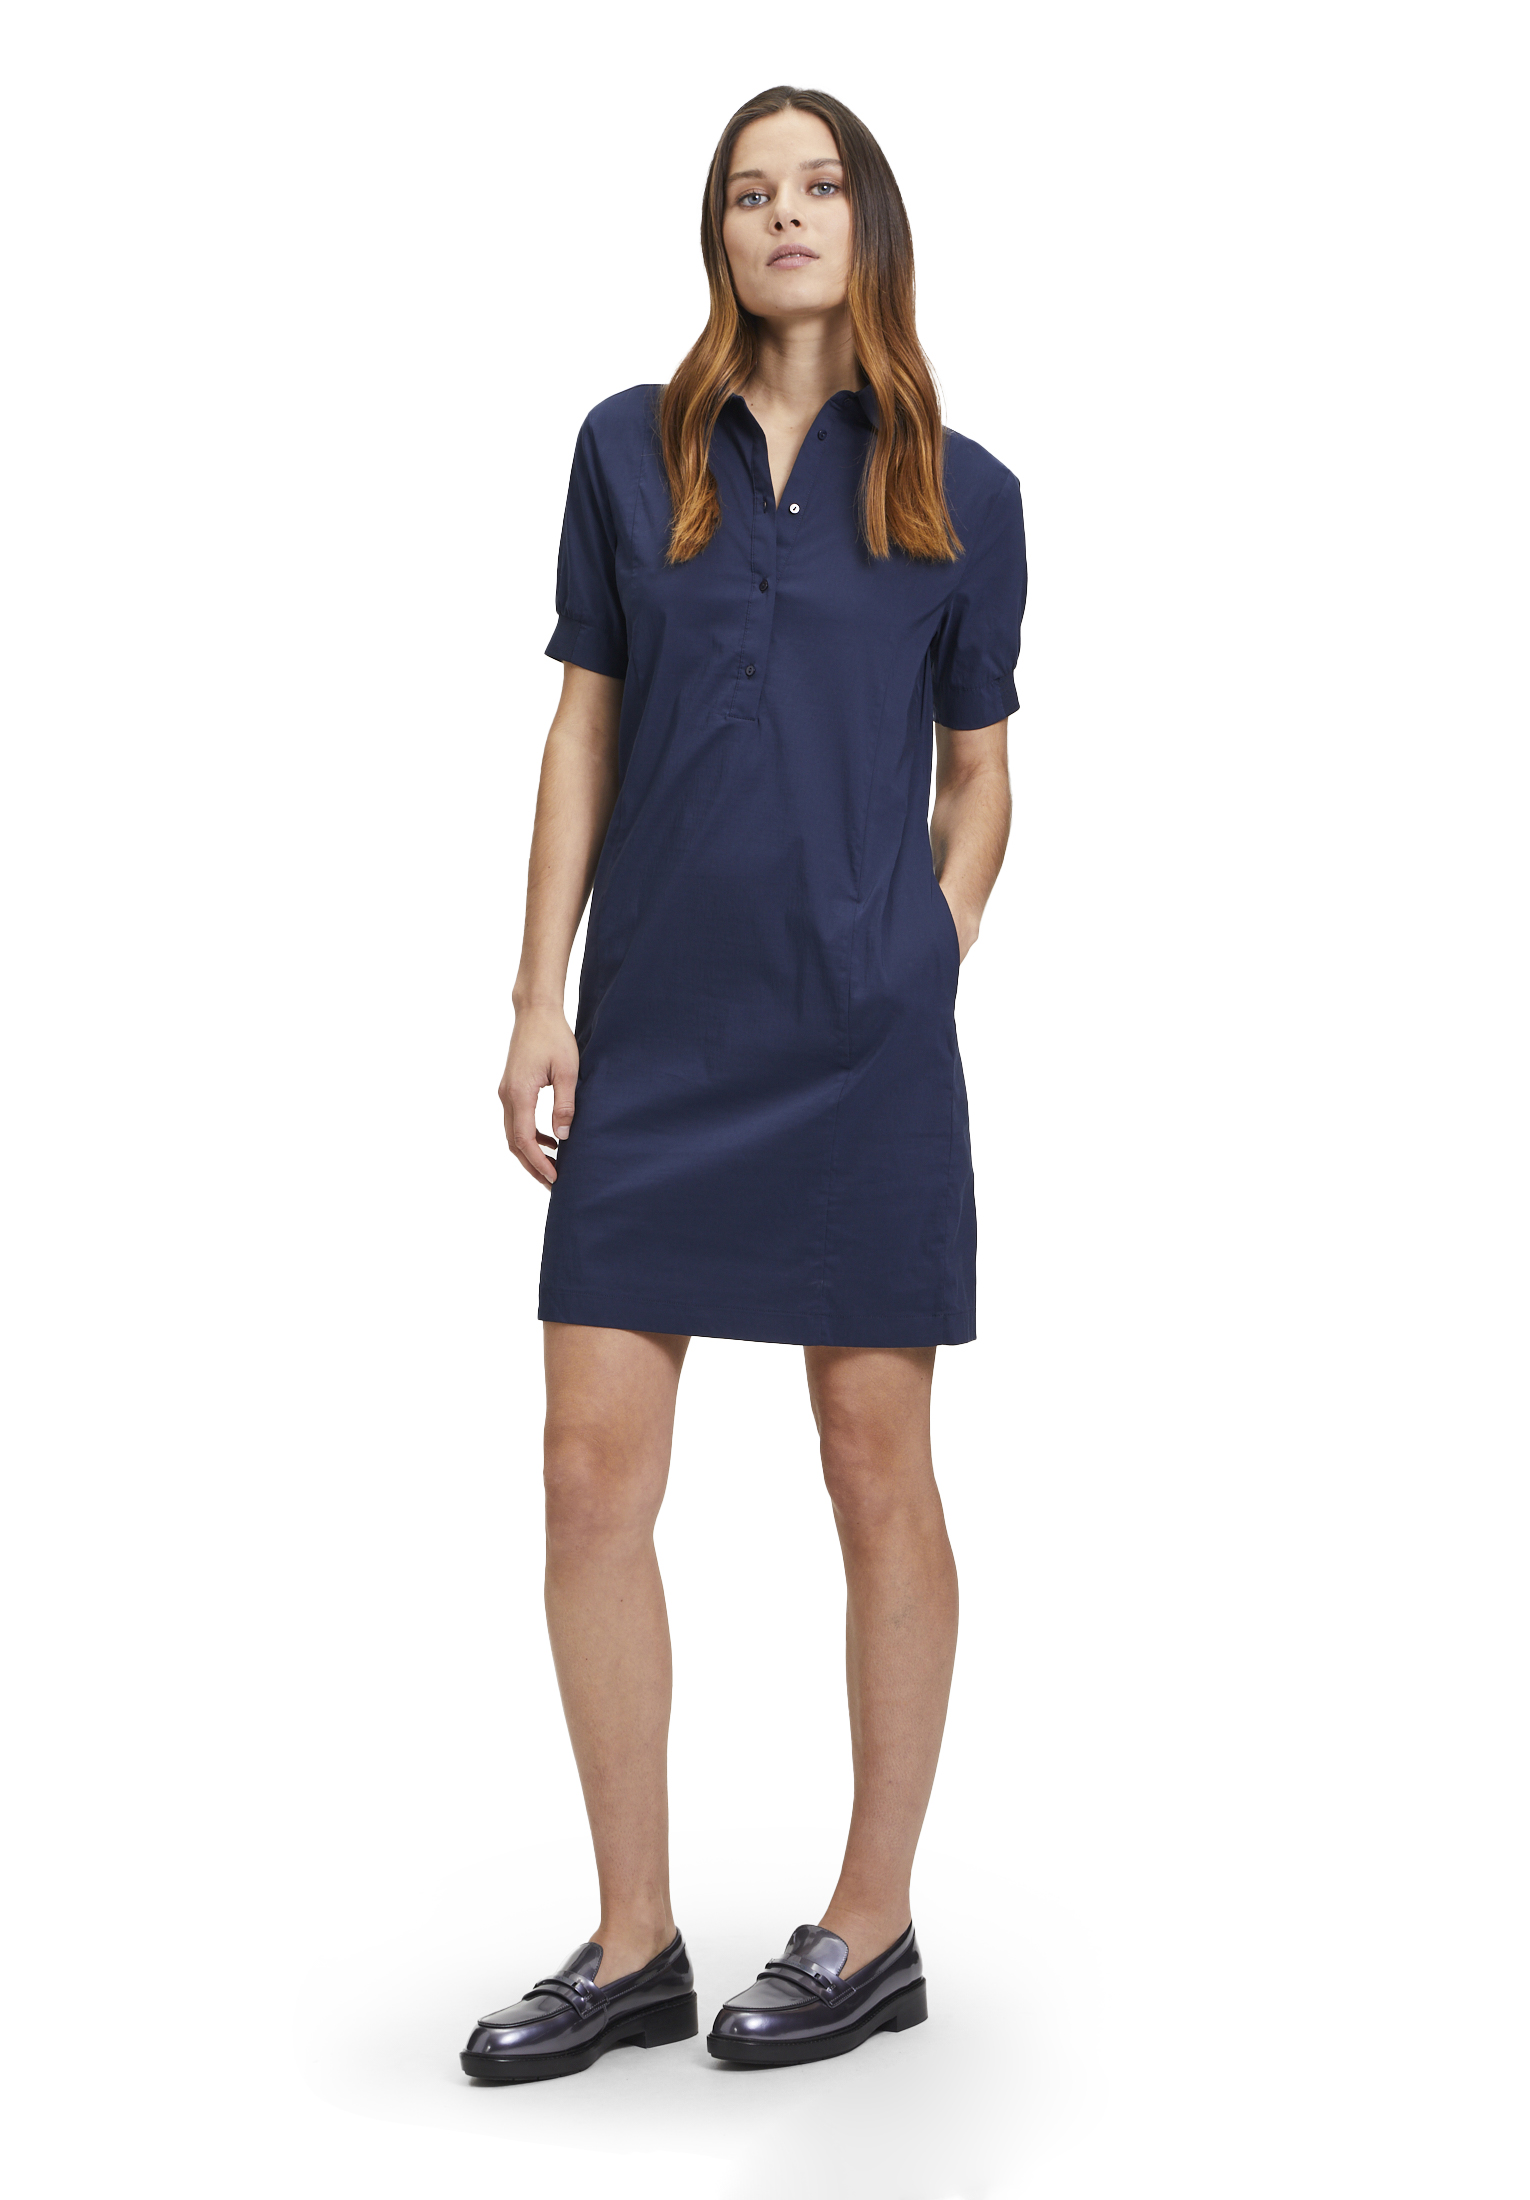 BETTY & CO dámské košilové šaty 1501 3031 8543 Modrá 44